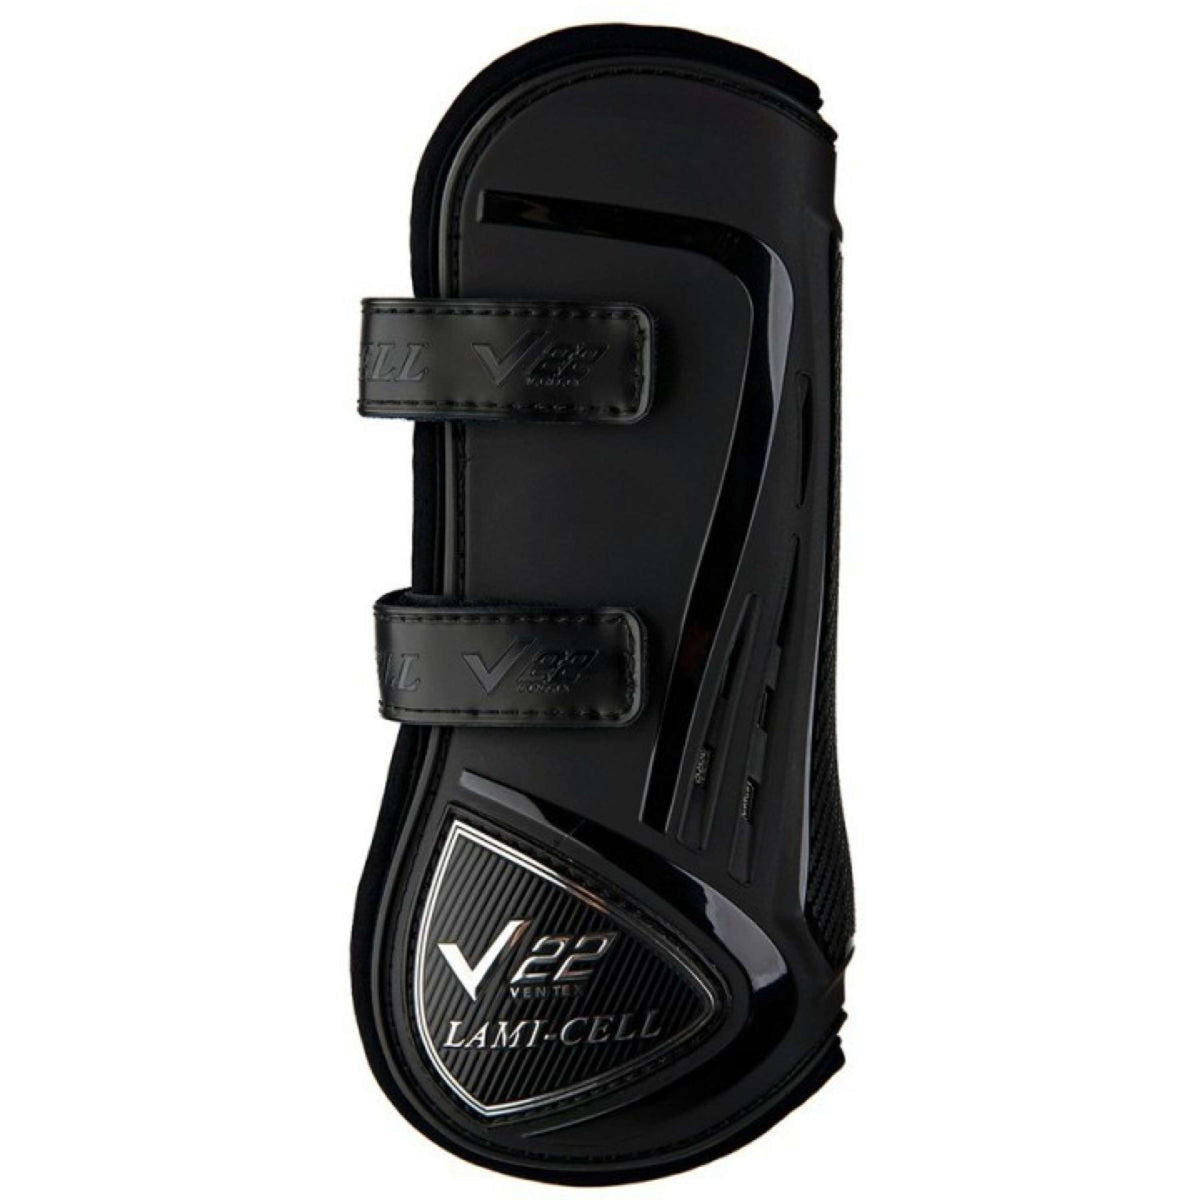 Lami-Cell Protèges-Tendons V22 avec Velcro Noir